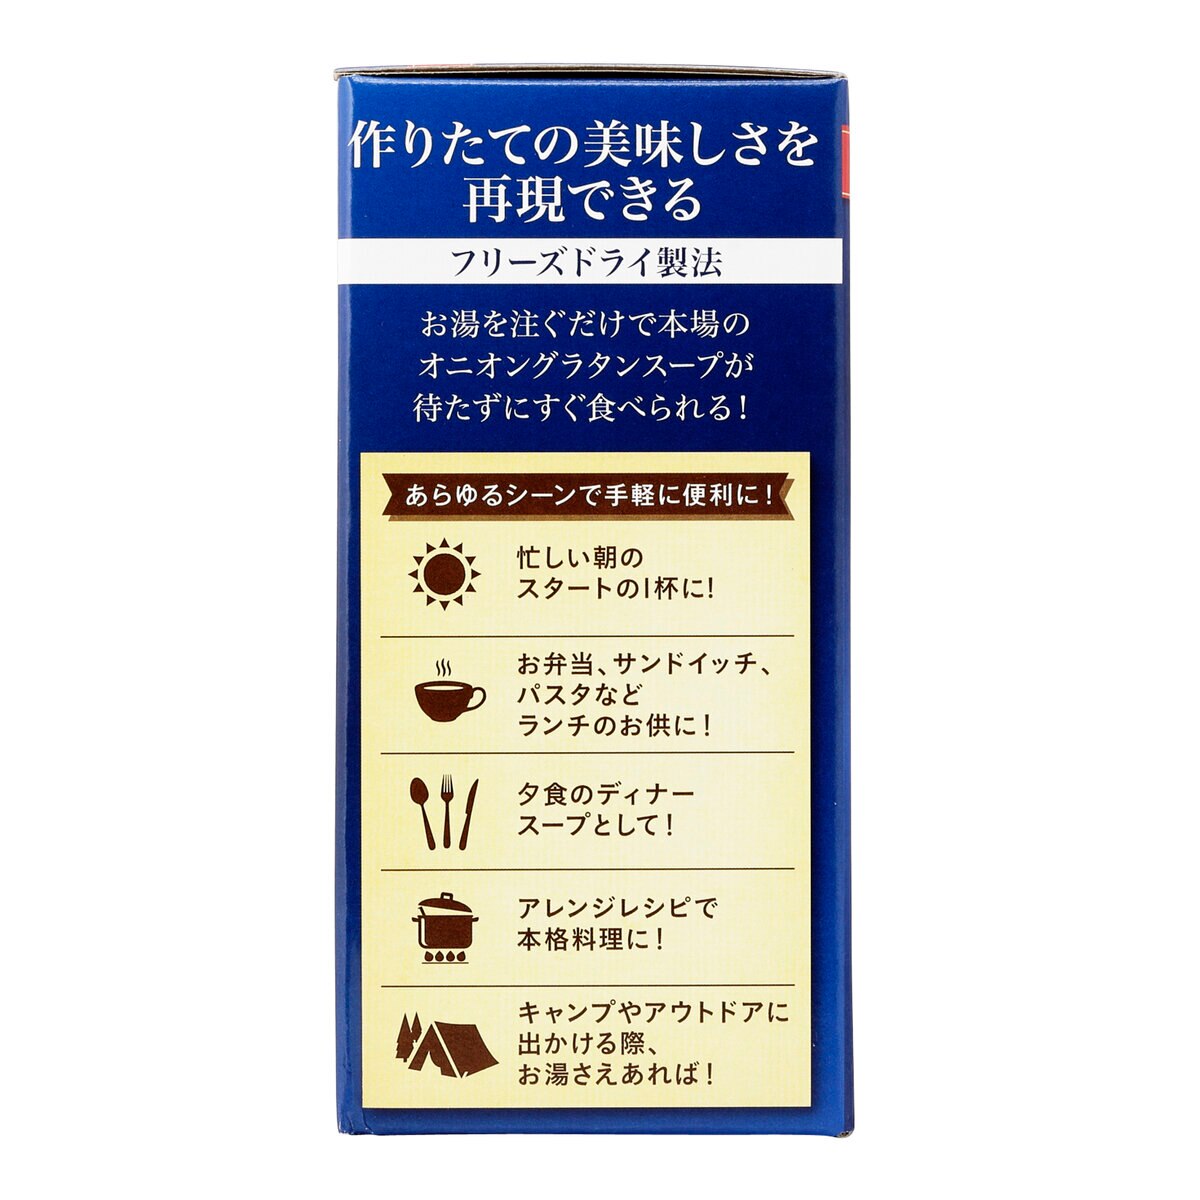 ピルボックス オニオングラタンスープ 10食 | Costco Japan